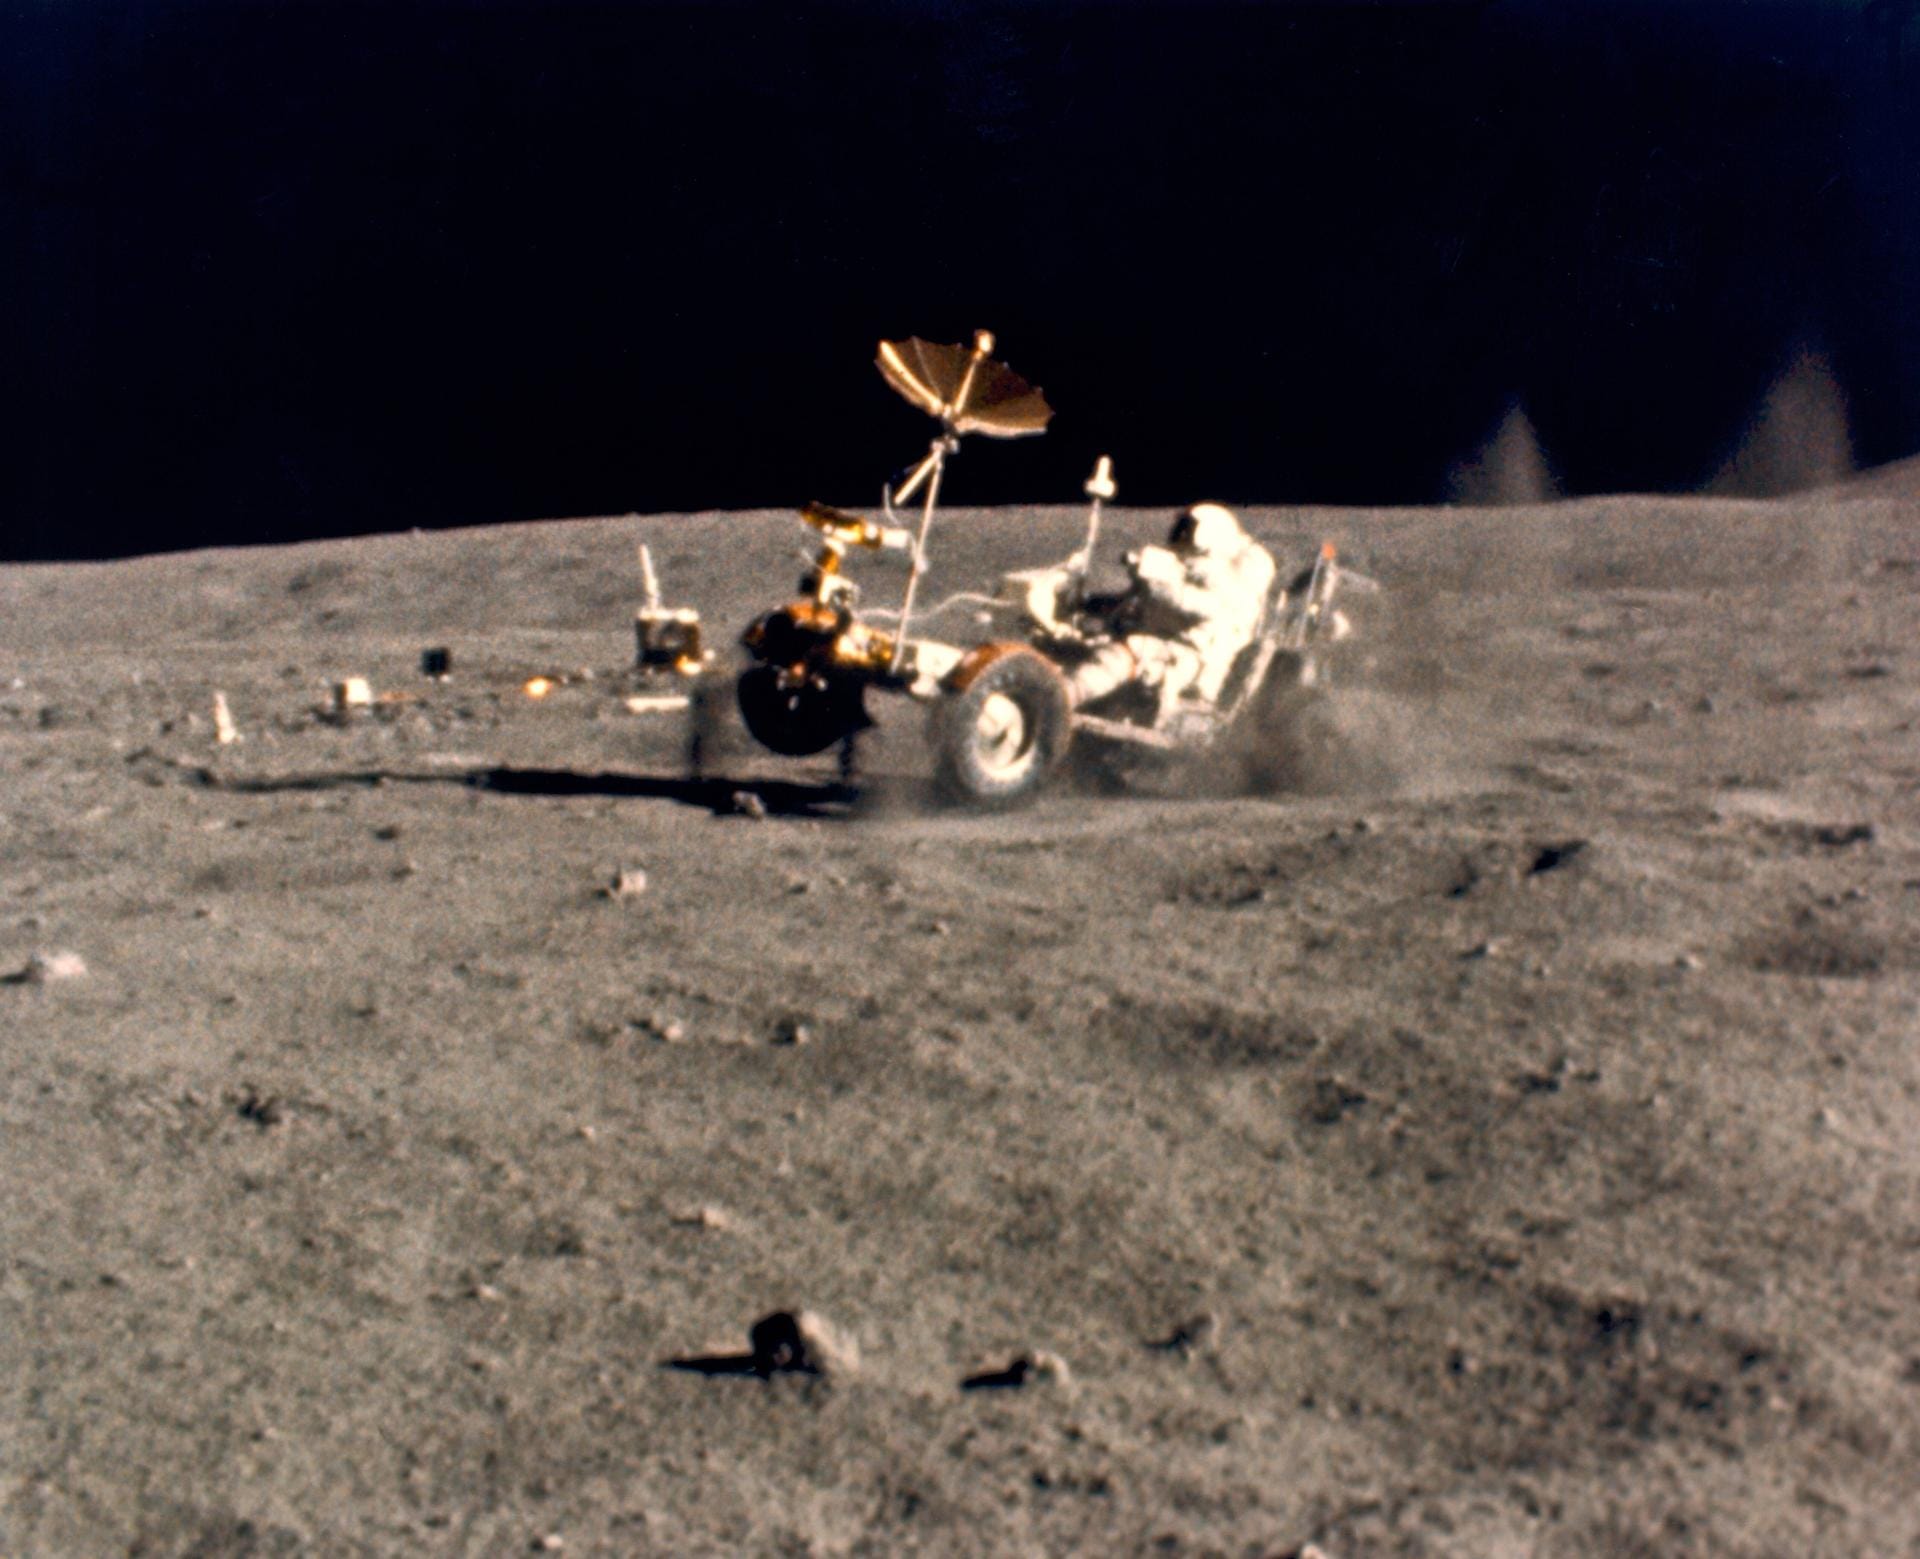 Auch in der Raumfahrt spielte und spielt Boeing eine wichtige Rolle. Die berühmten Mondautos bei den Apollo-Missionen kamen von Boeing.